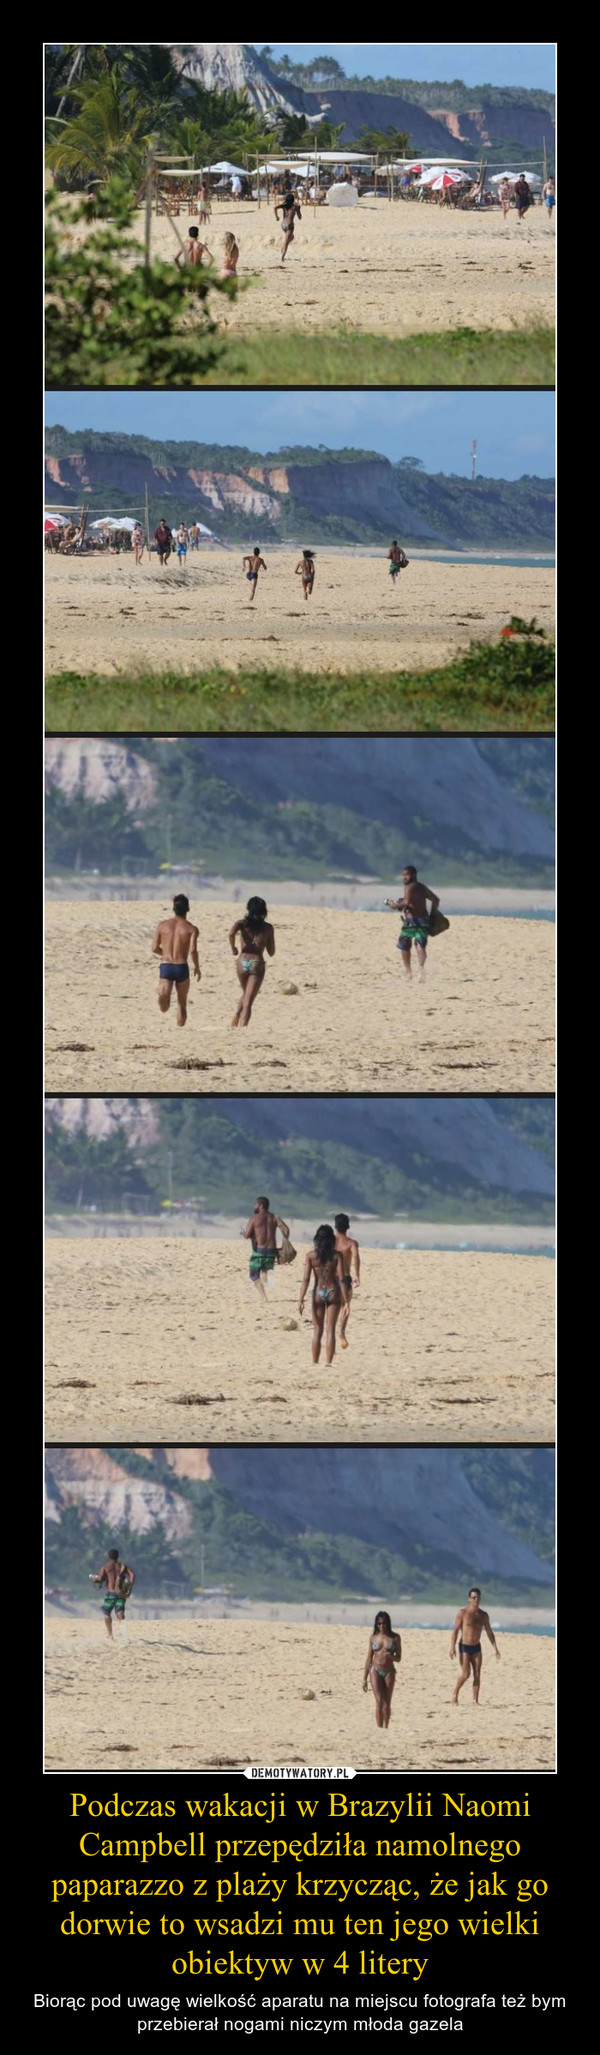 Podczas wakacji w Brazylii Naomi Campbell przepędziła namolnego paparazzo z plaży krzycząc, że jak go dorwie to wsadzi mu ten jego wielki obiektyw w 4 litery